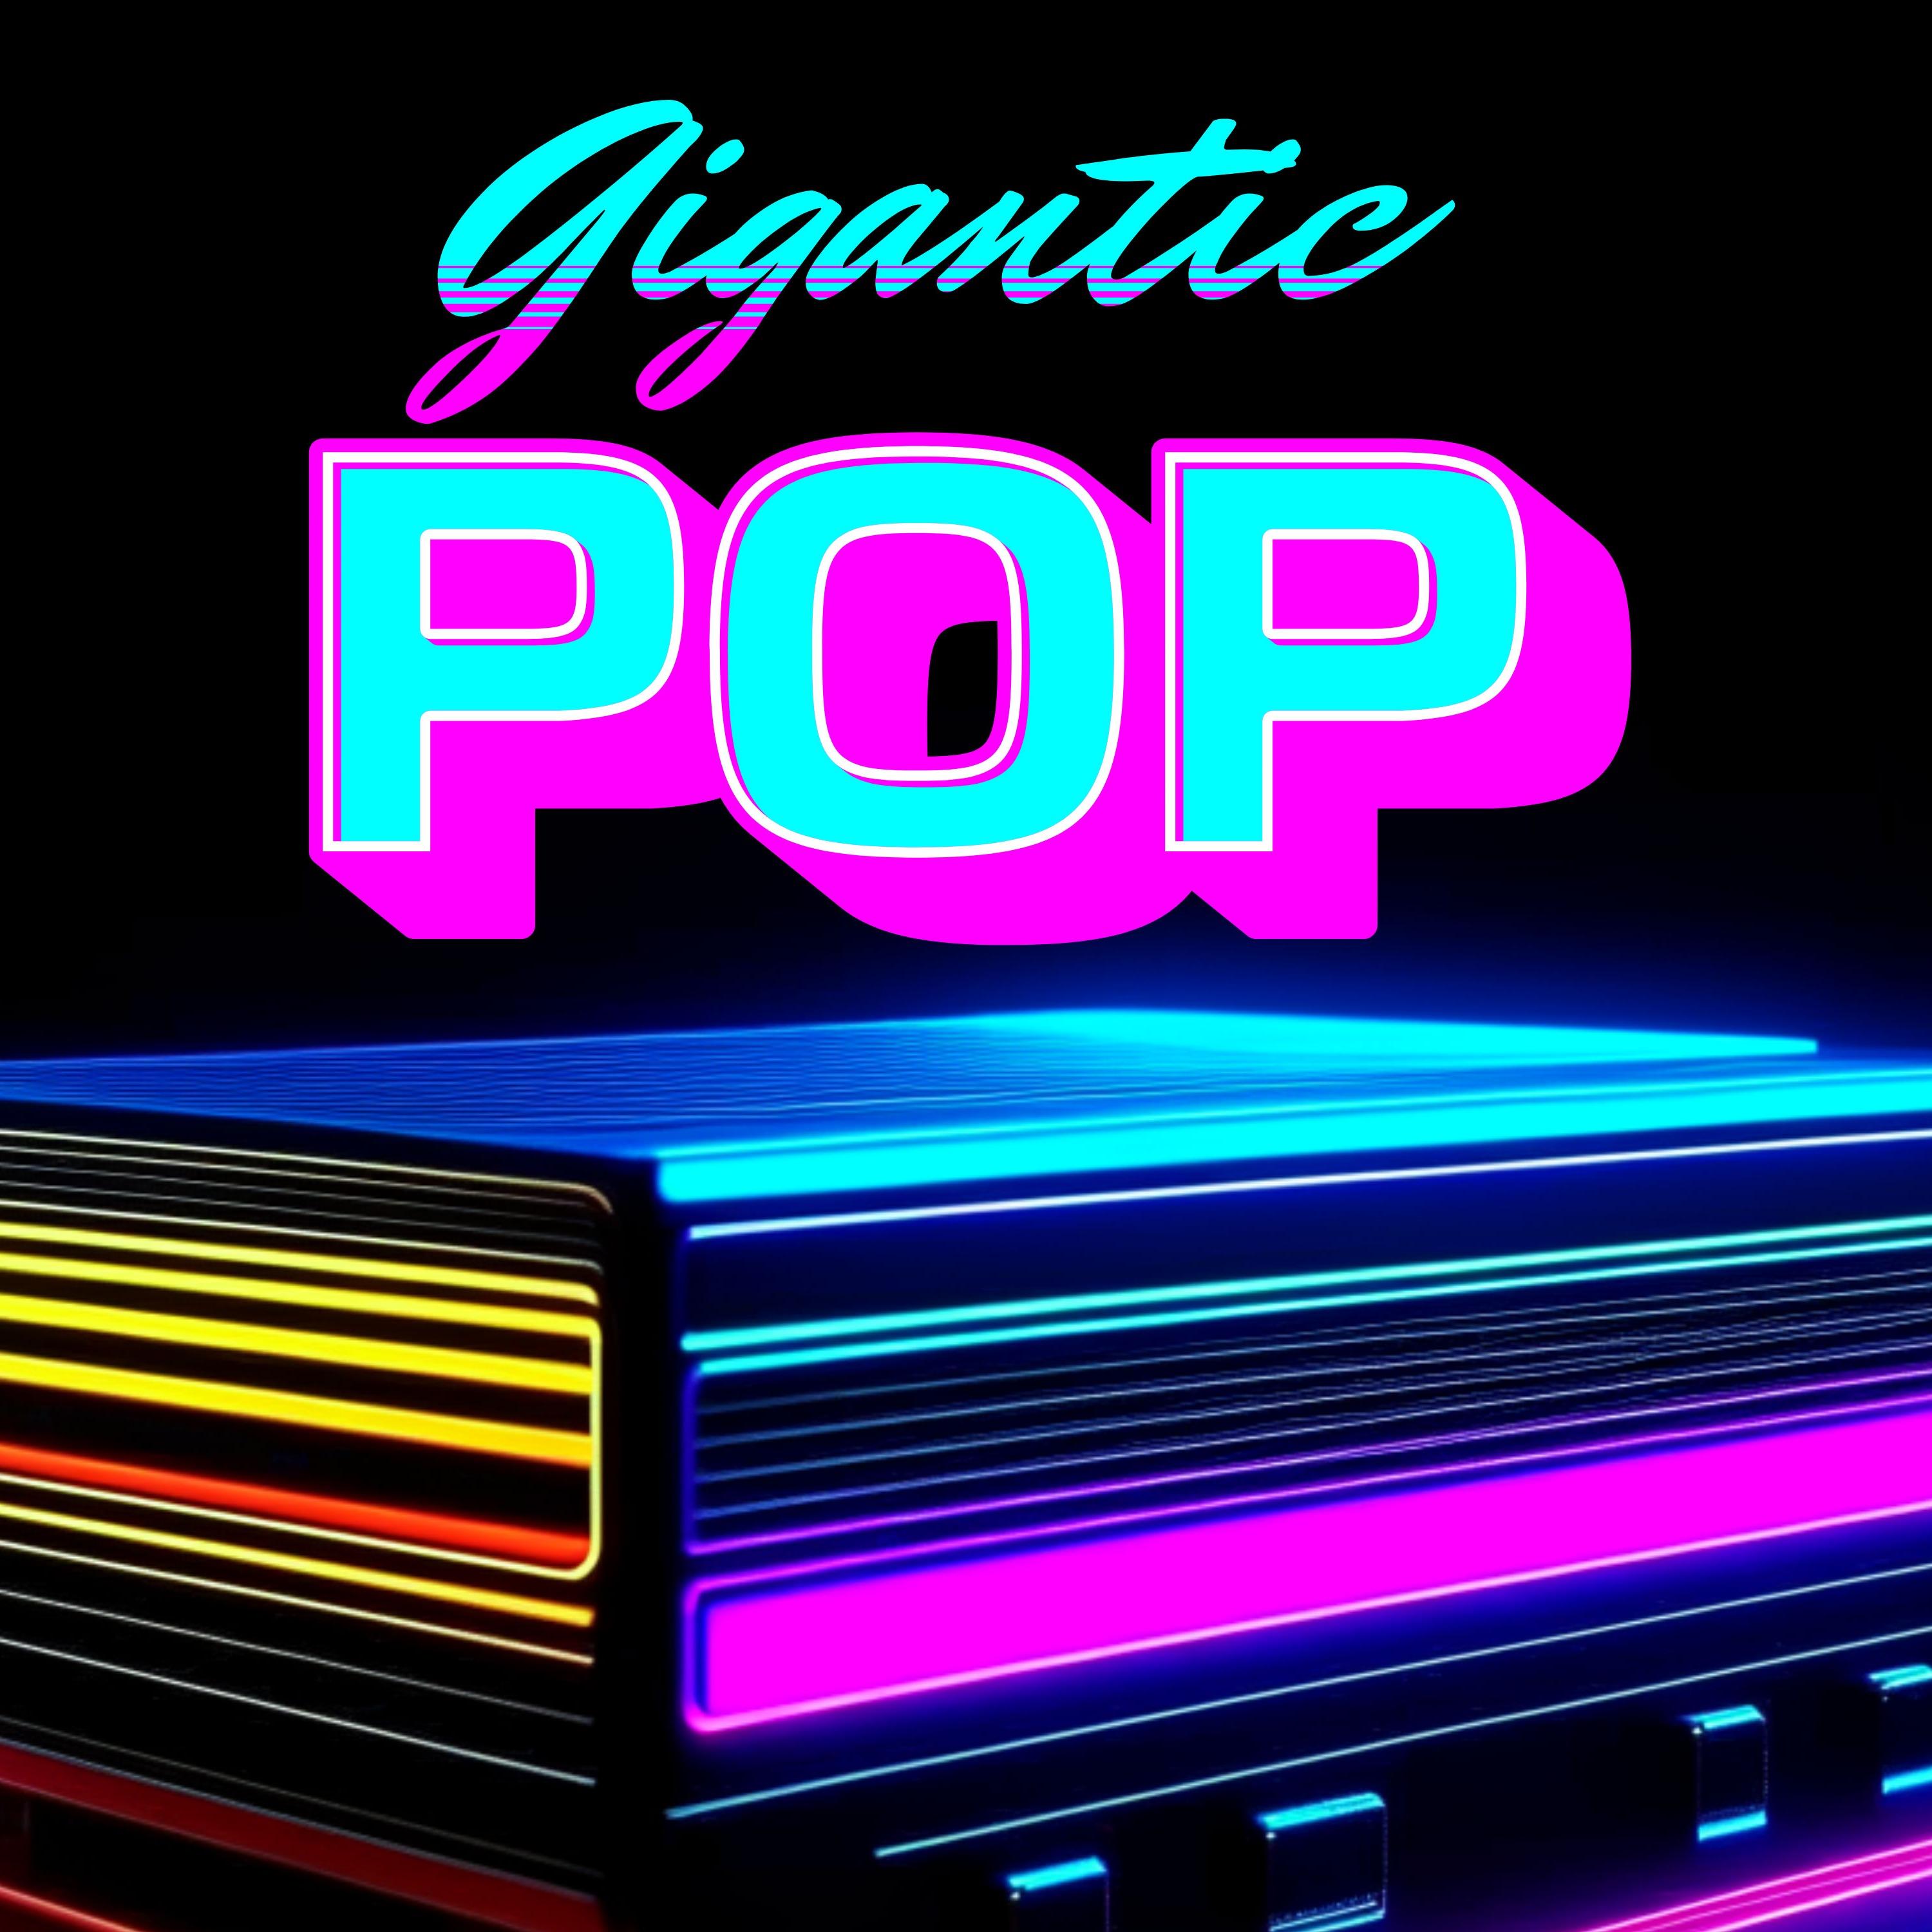 Gigantic Pop